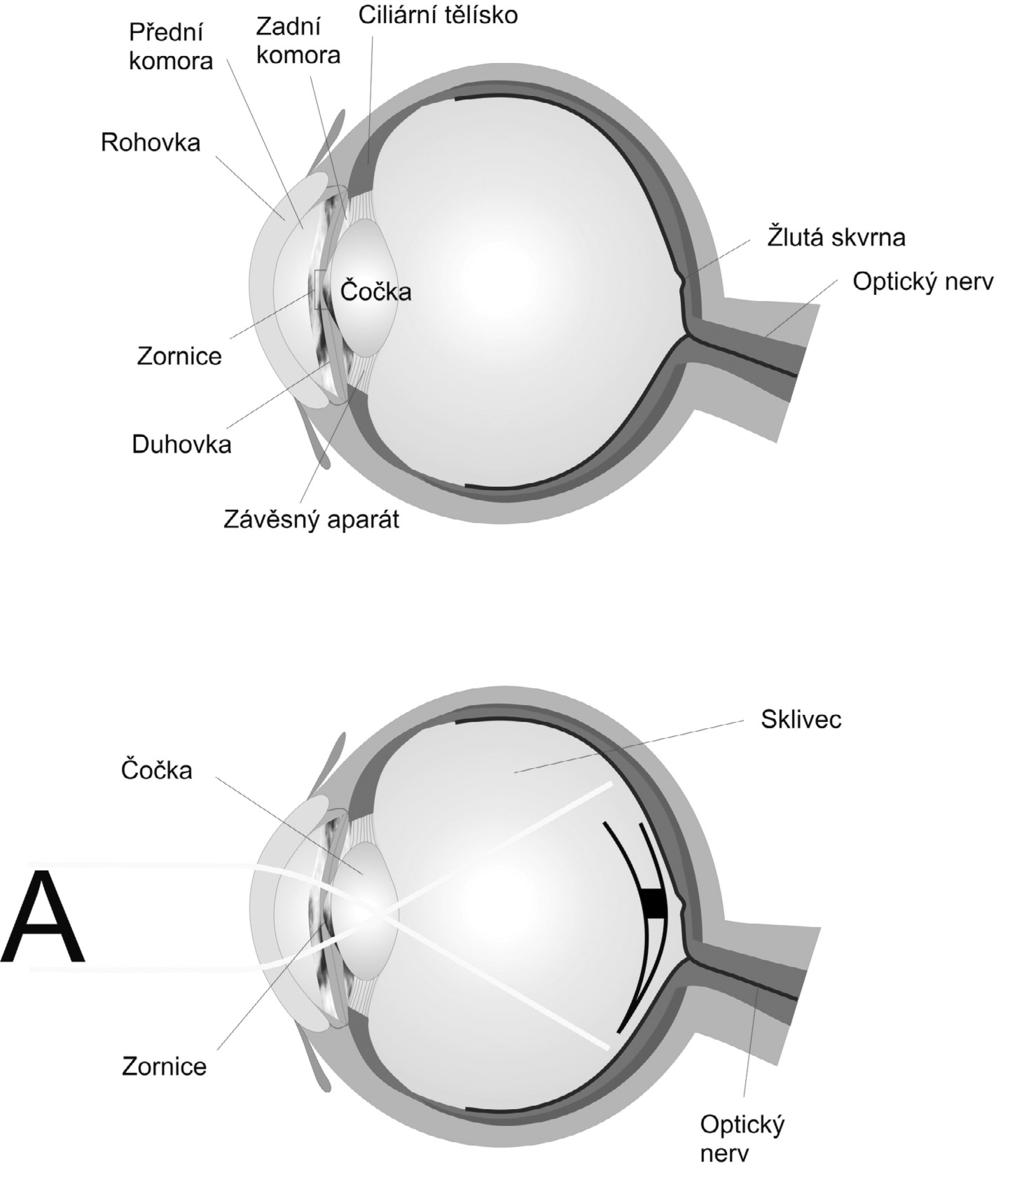 4 / Aplikované pohybové aktivity osob se zrakovým postižením 4.1 / Funkce lidského oka Oko bývá často přirovnáváno k fotografickému aparátu.